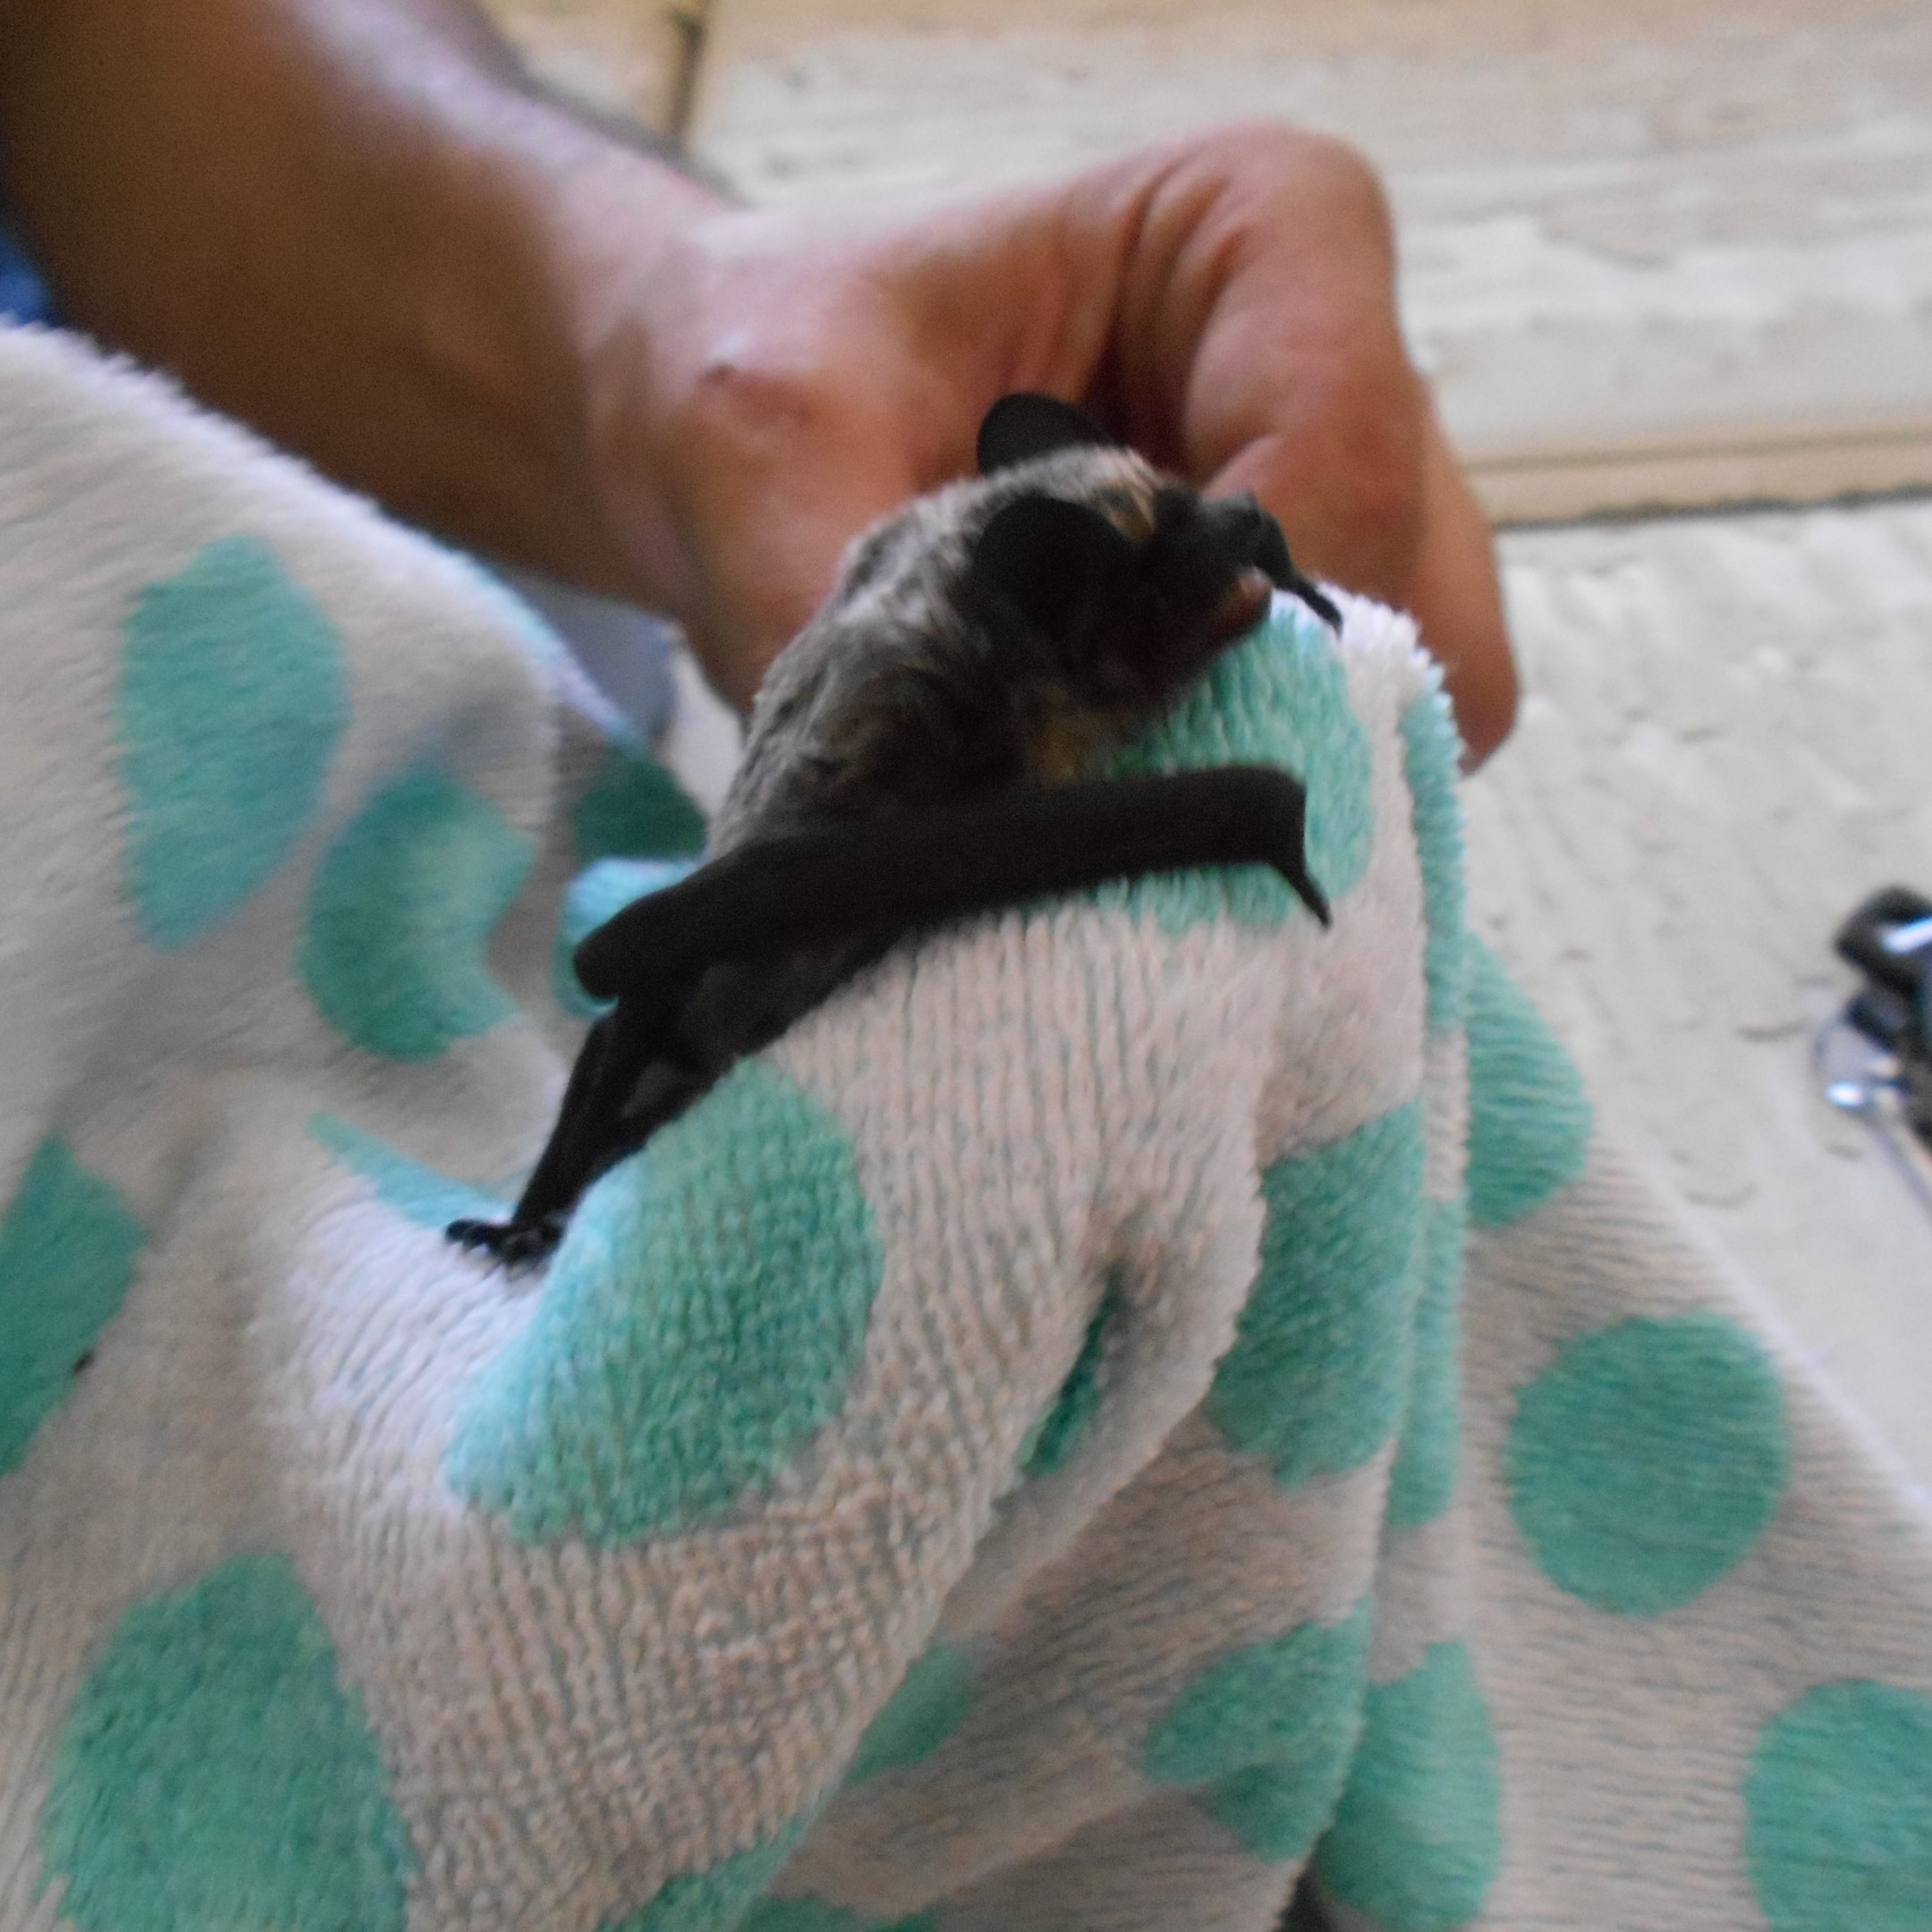 Тюменка нашла на своем балконе стаю летучих мышей - 10 июля 2016 года